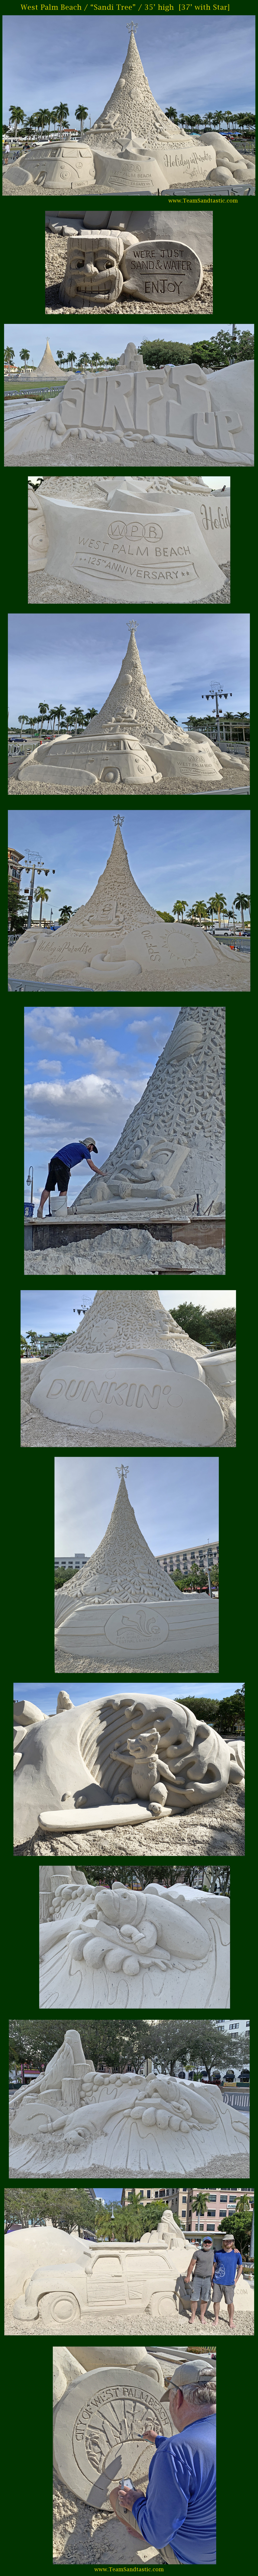 West Palm Beach Sand Sculptures